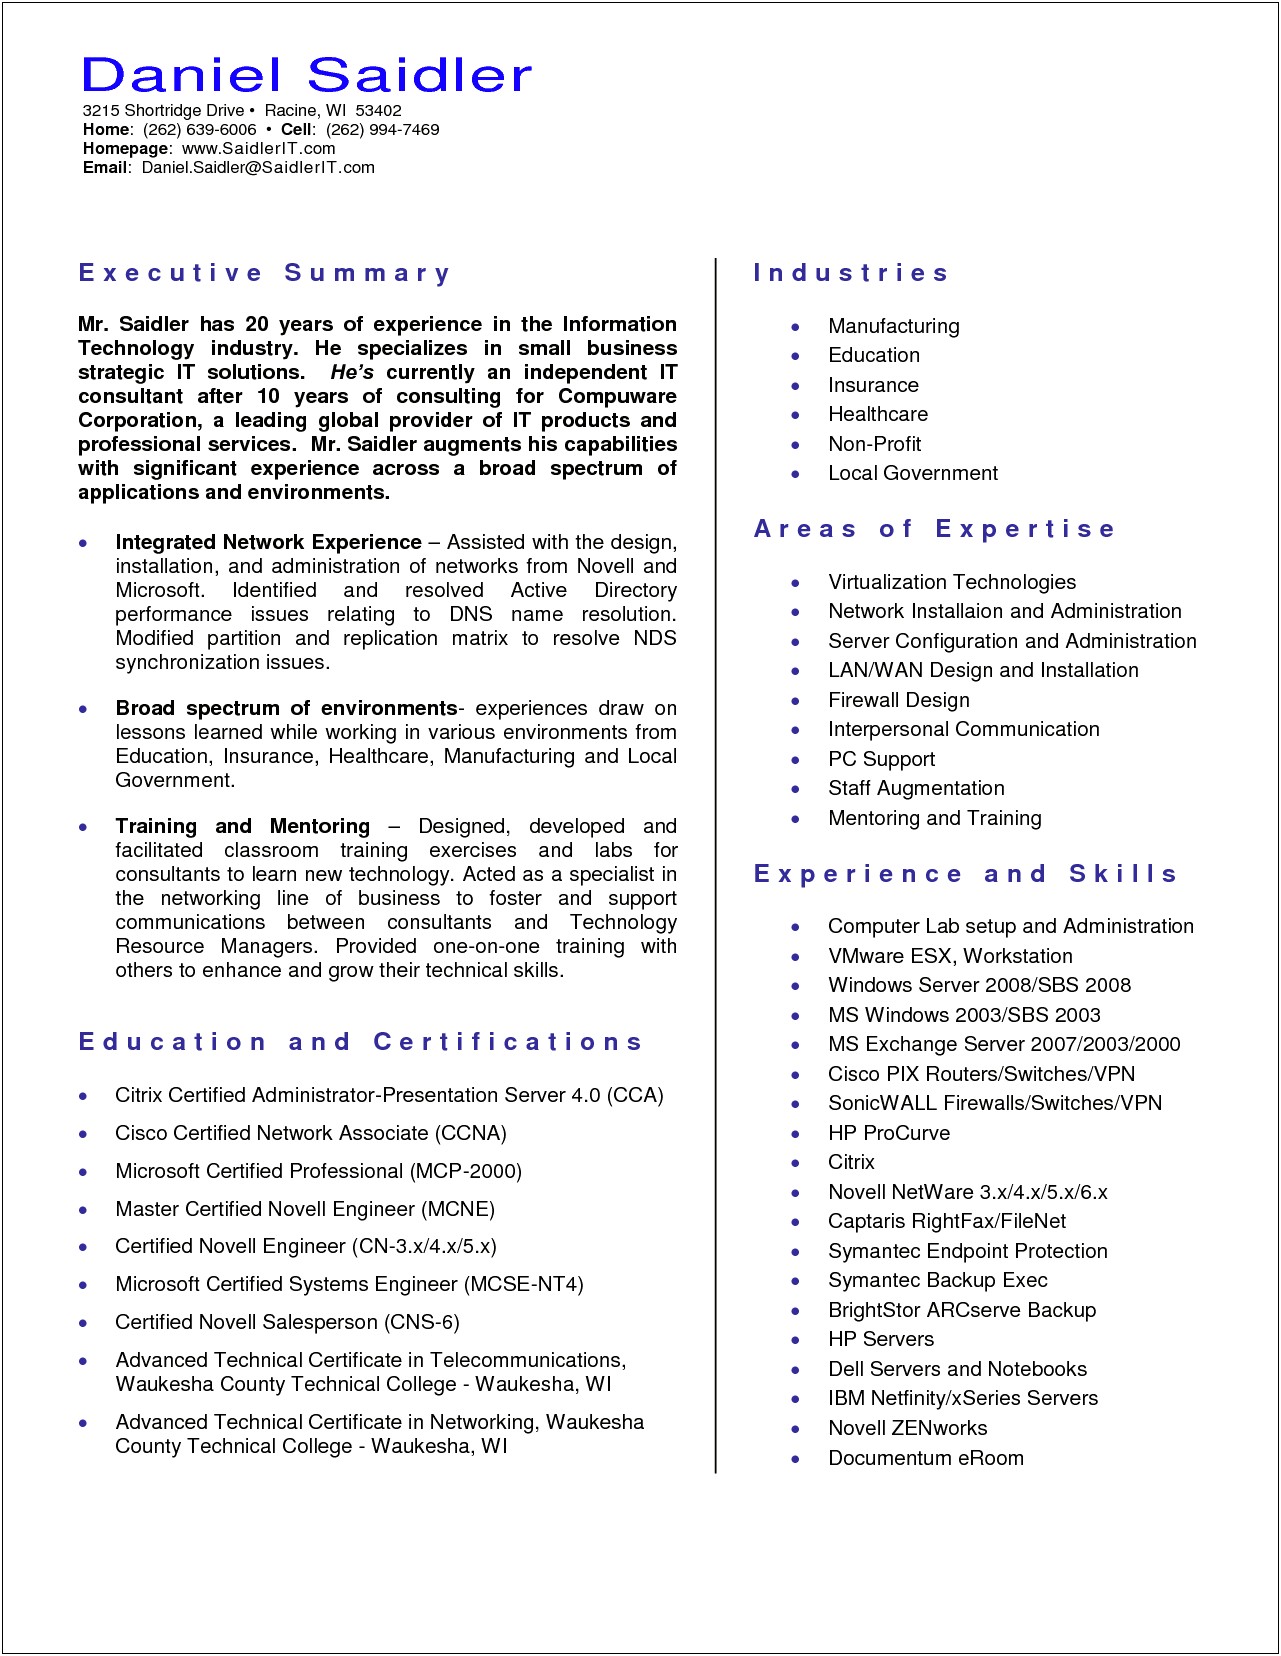 Resume Summary Of Qualifications Engineer